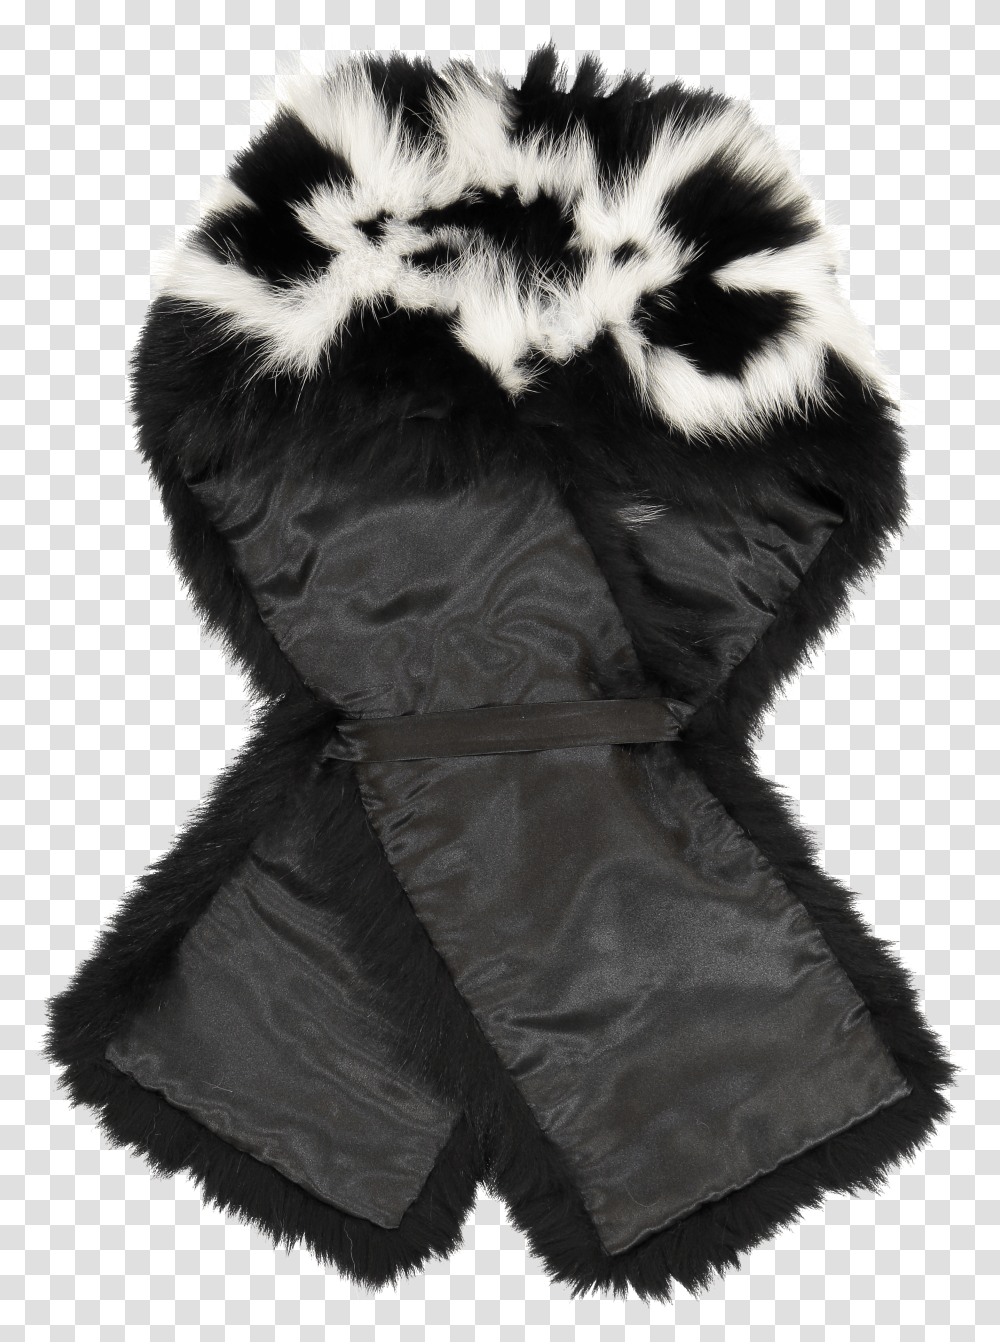 Skunk Scarf Black Fur Scarf Black And White Transparent Png